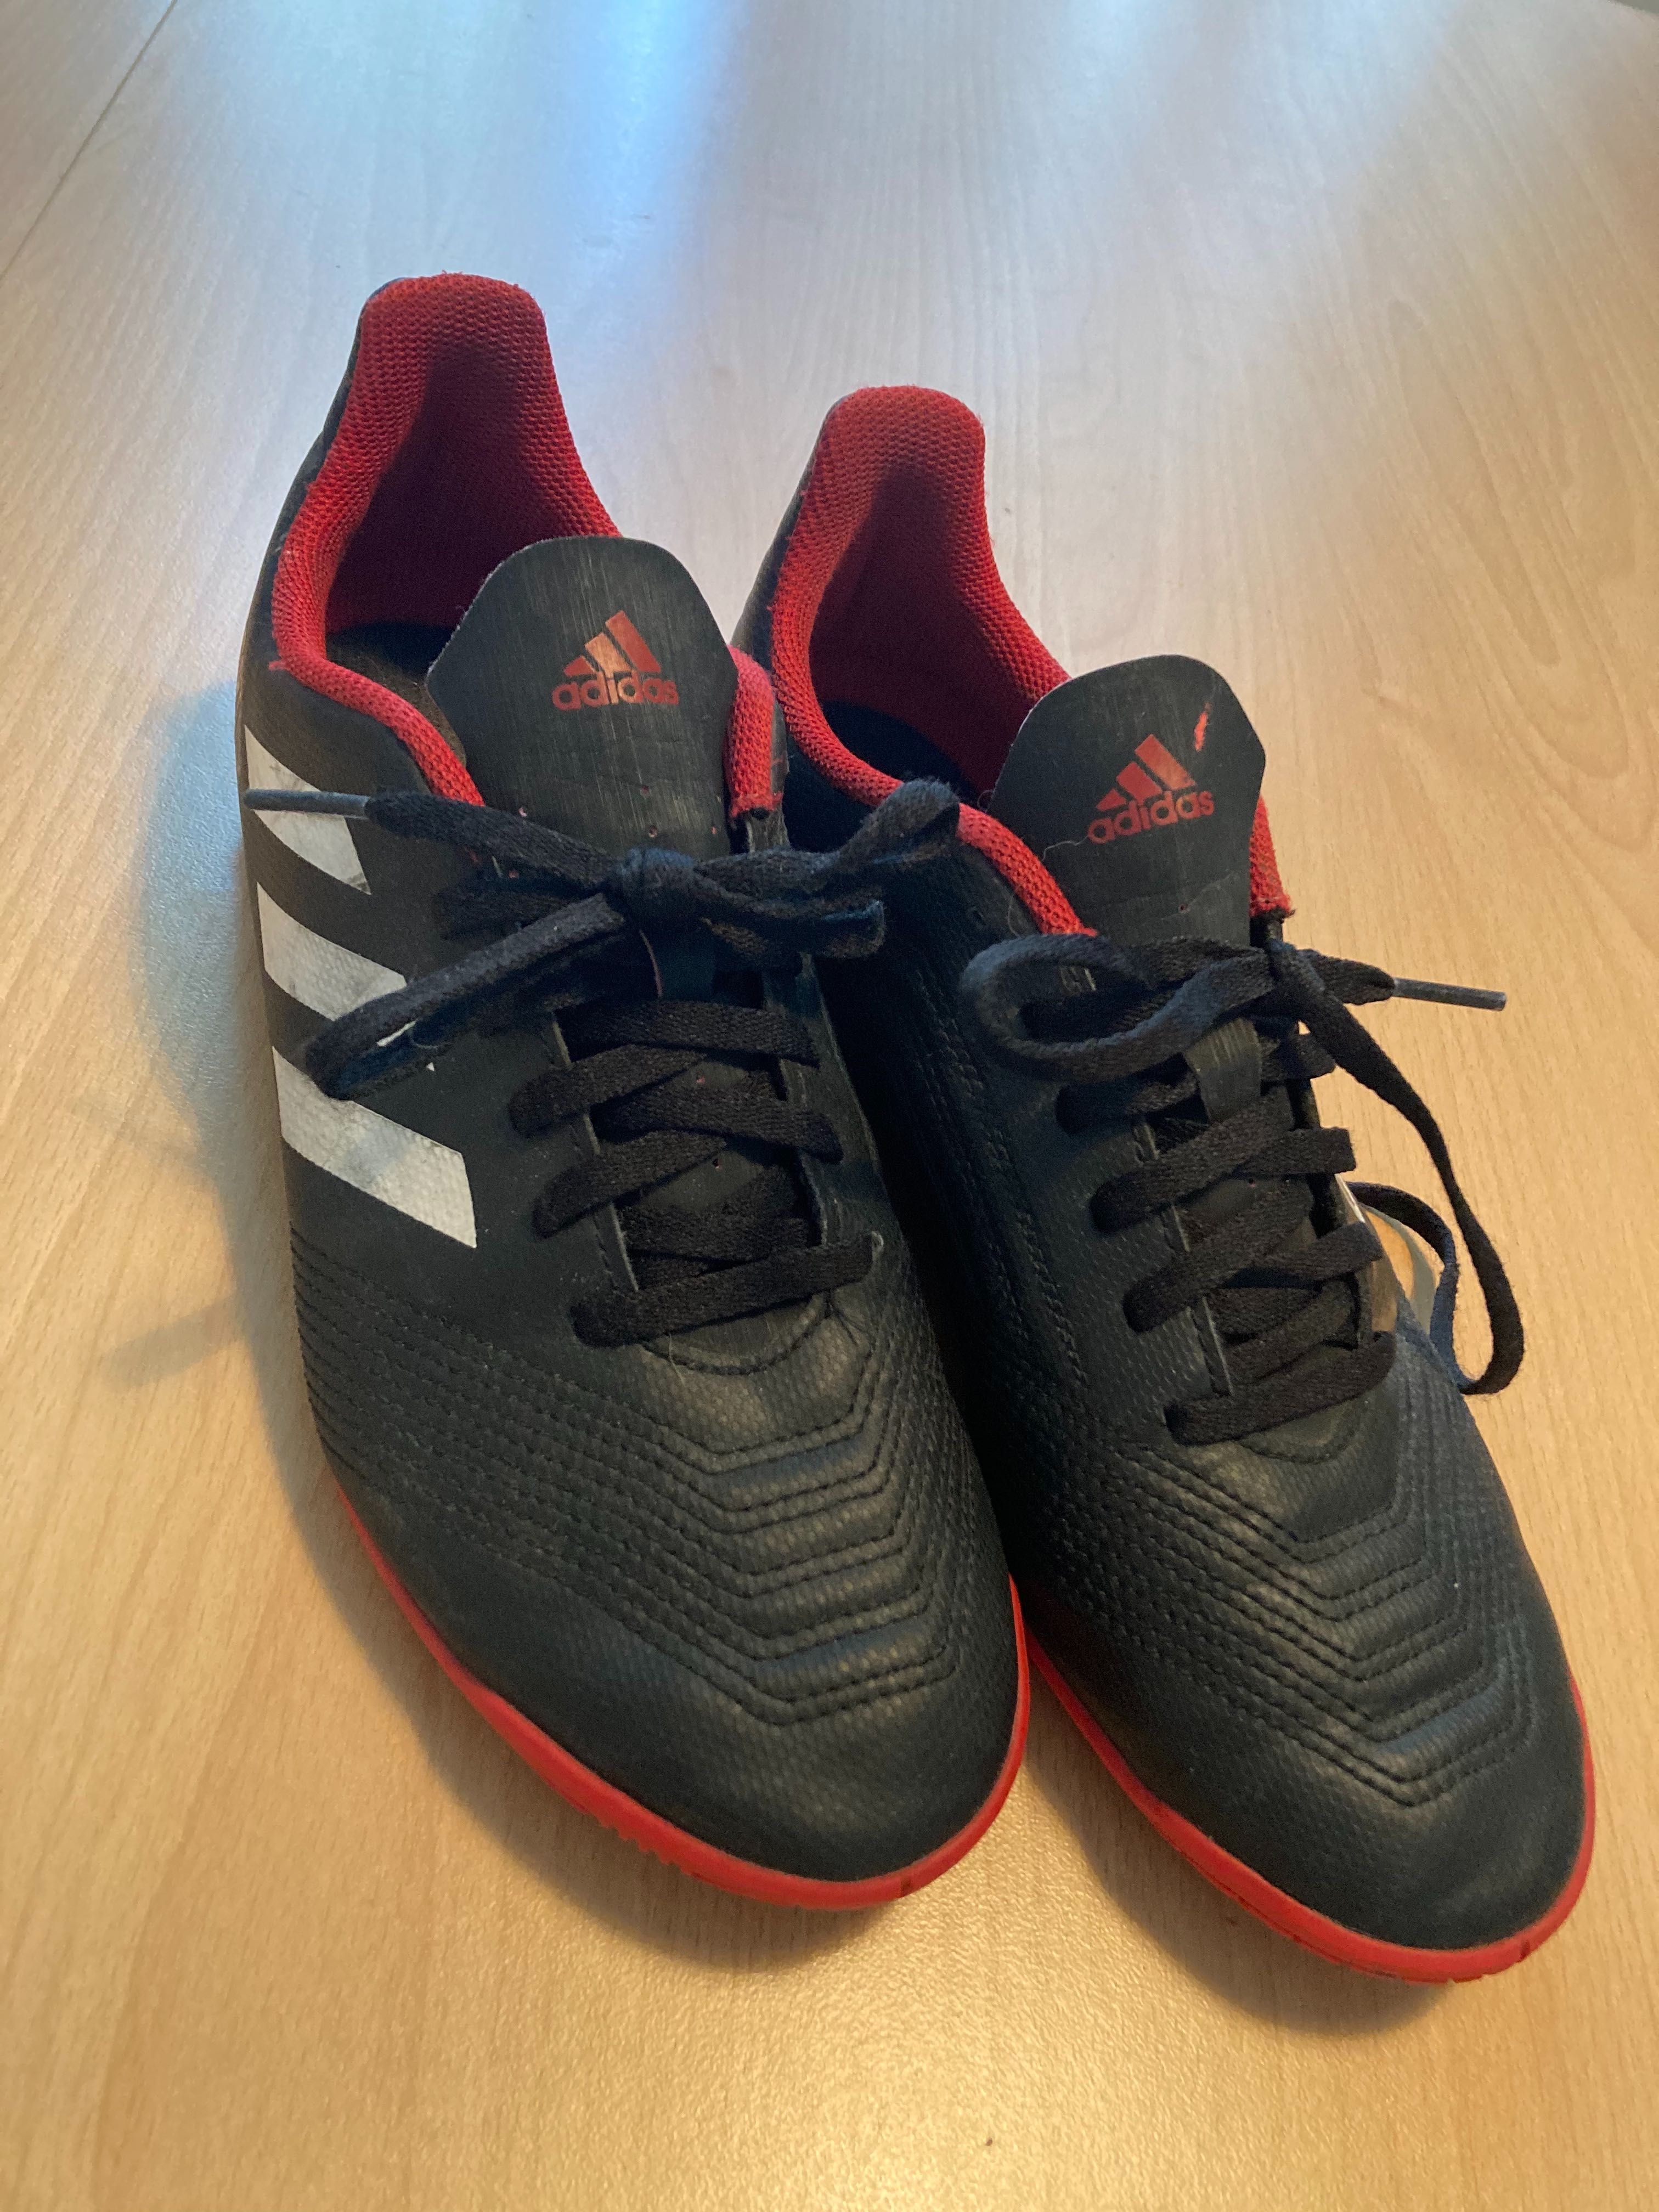 Buty piłkarskie halowe Adidas Predator nr 38 2/3, wkładka 23 cm